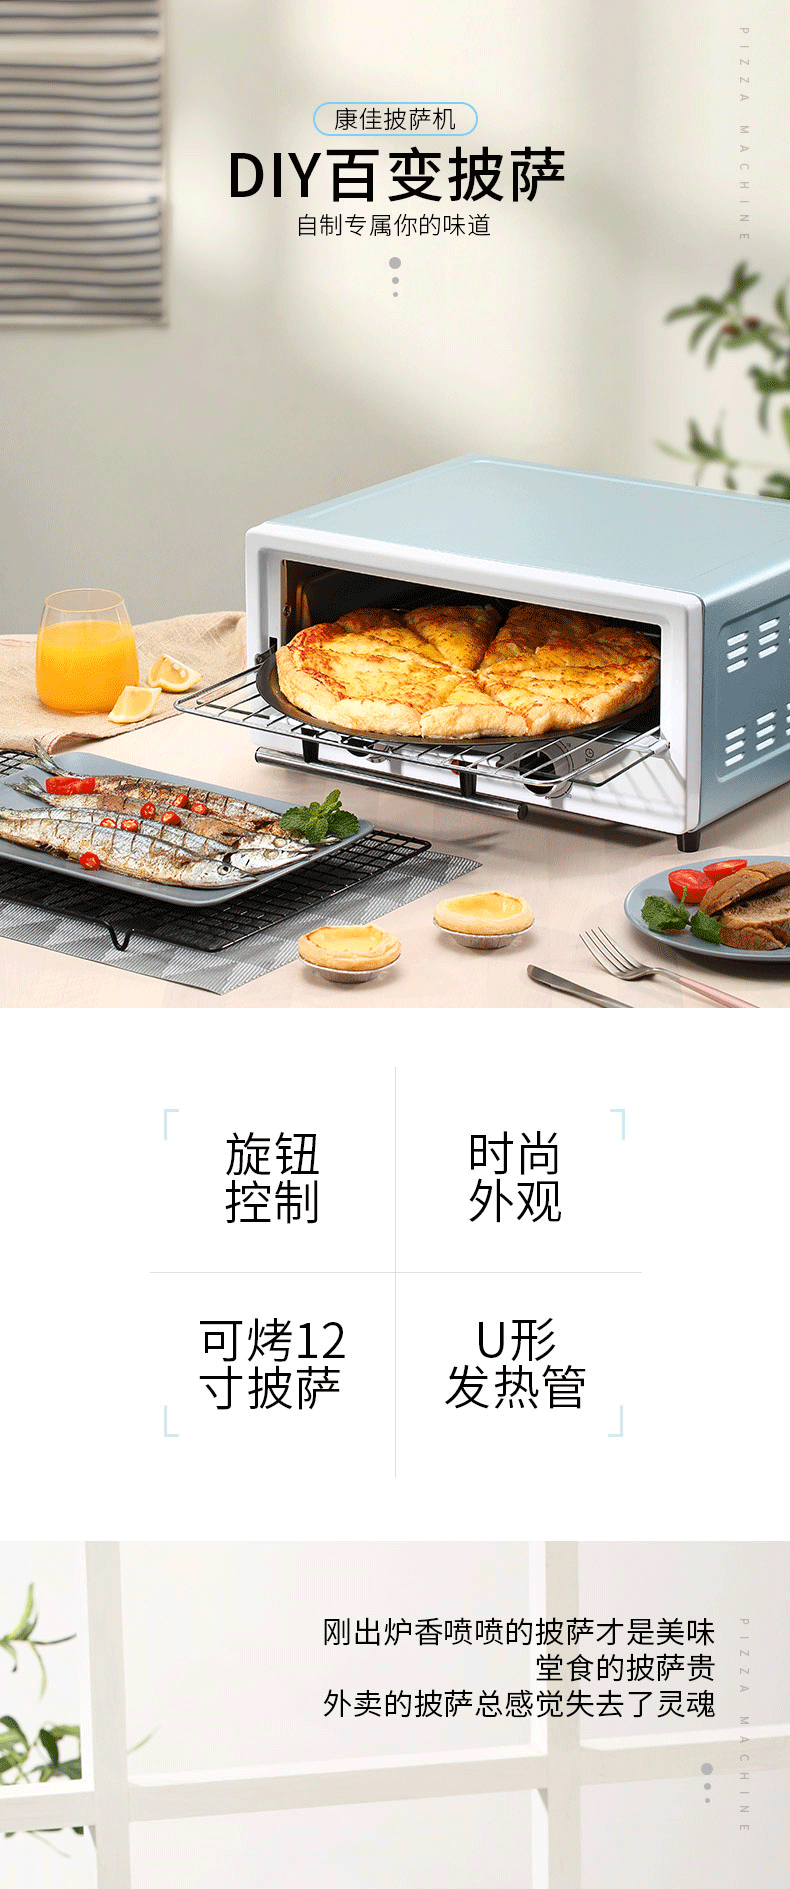 康佳/KONKA 披萨机 电烤箱 多功能家用烘焙烤箱12L烘烤蛋糕面包饼干机披萨机KGKX-1213